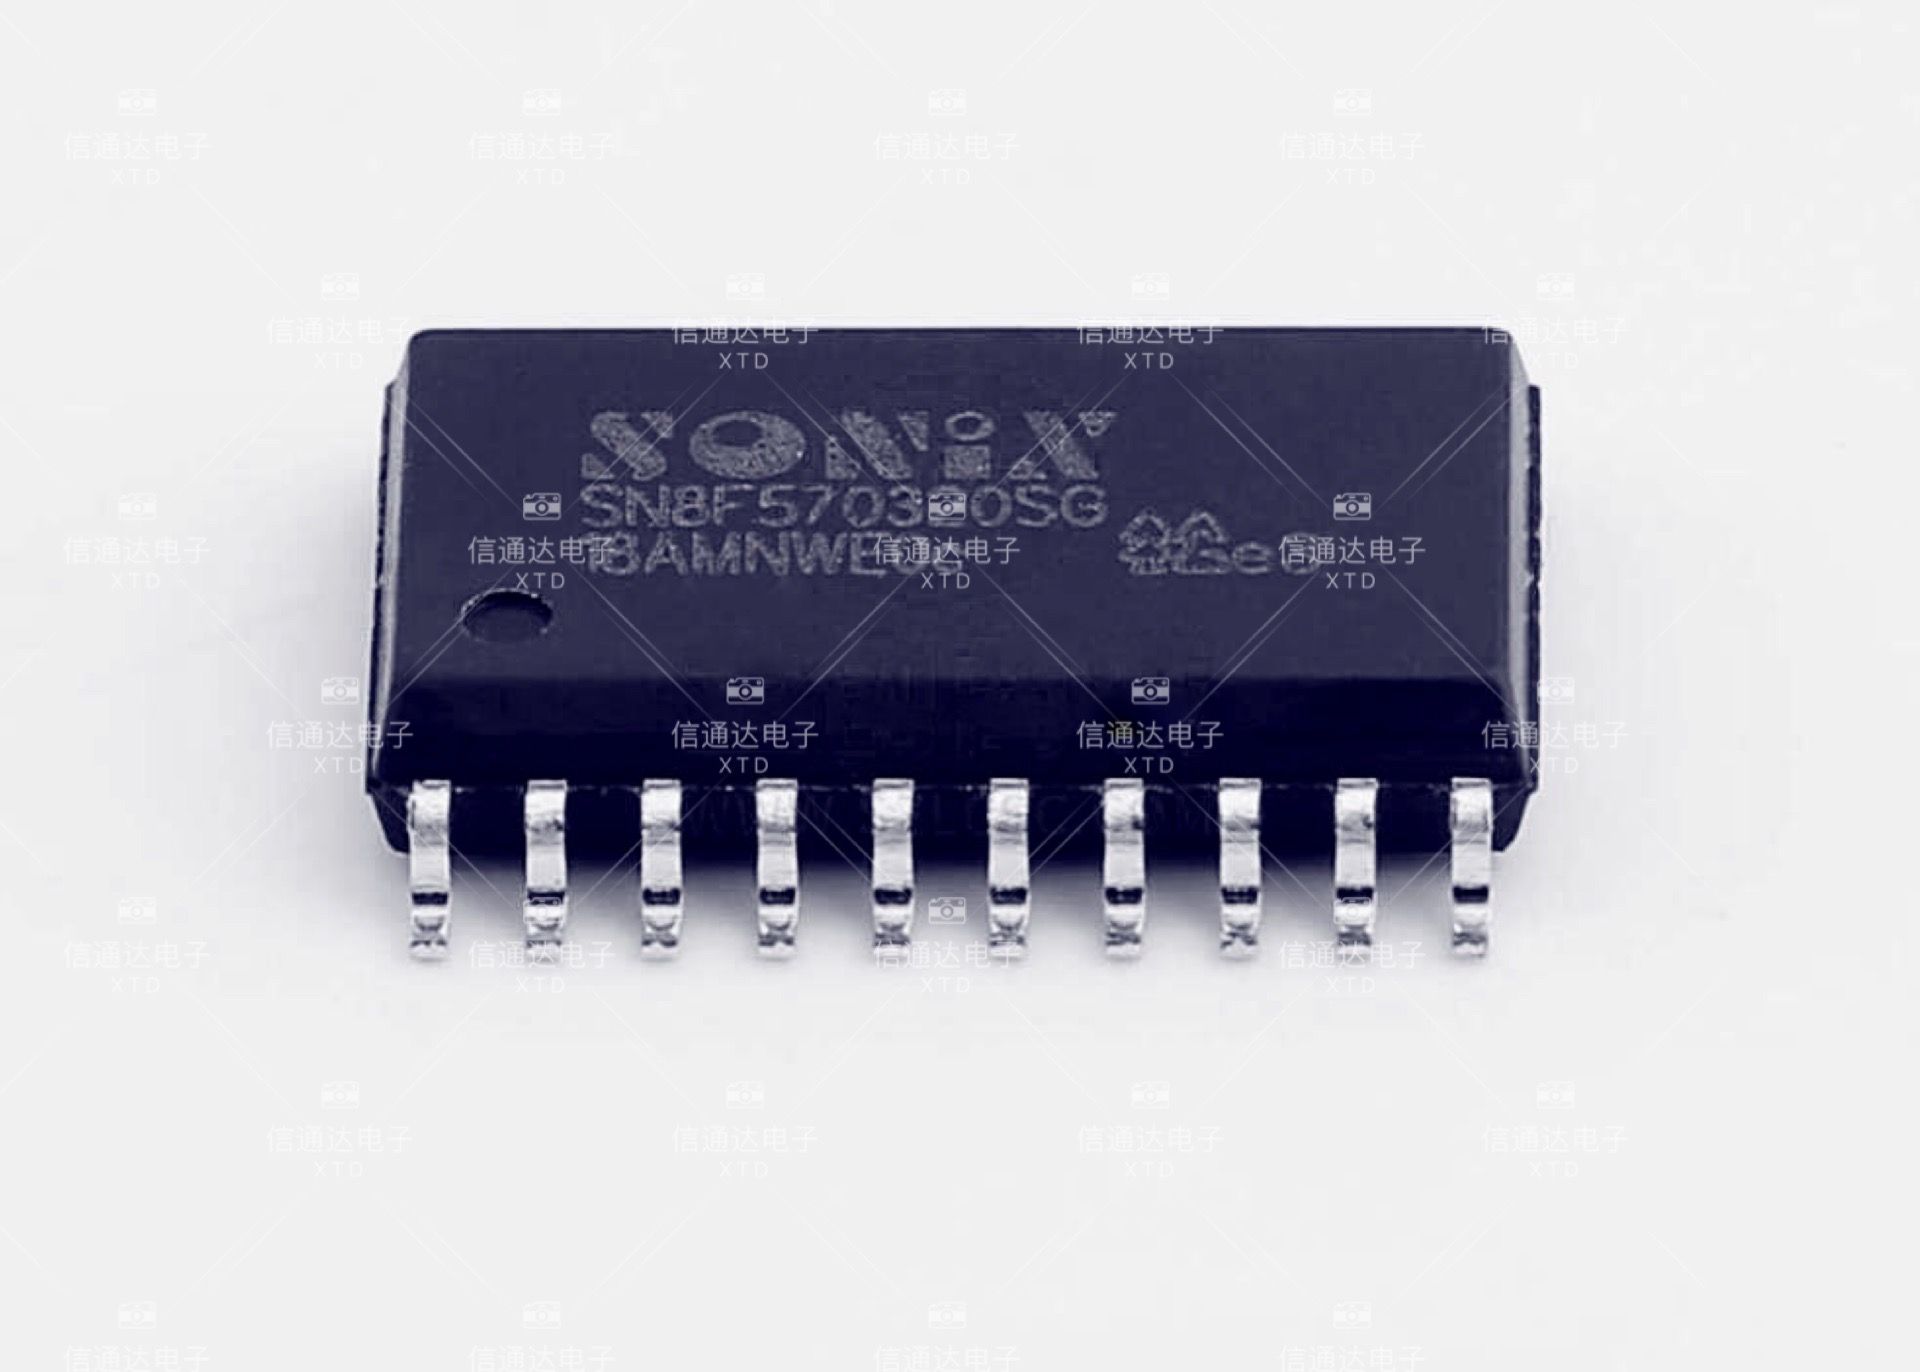 SN8F570320SG 小家电专用芯片 原厂原装正品 一站式配套